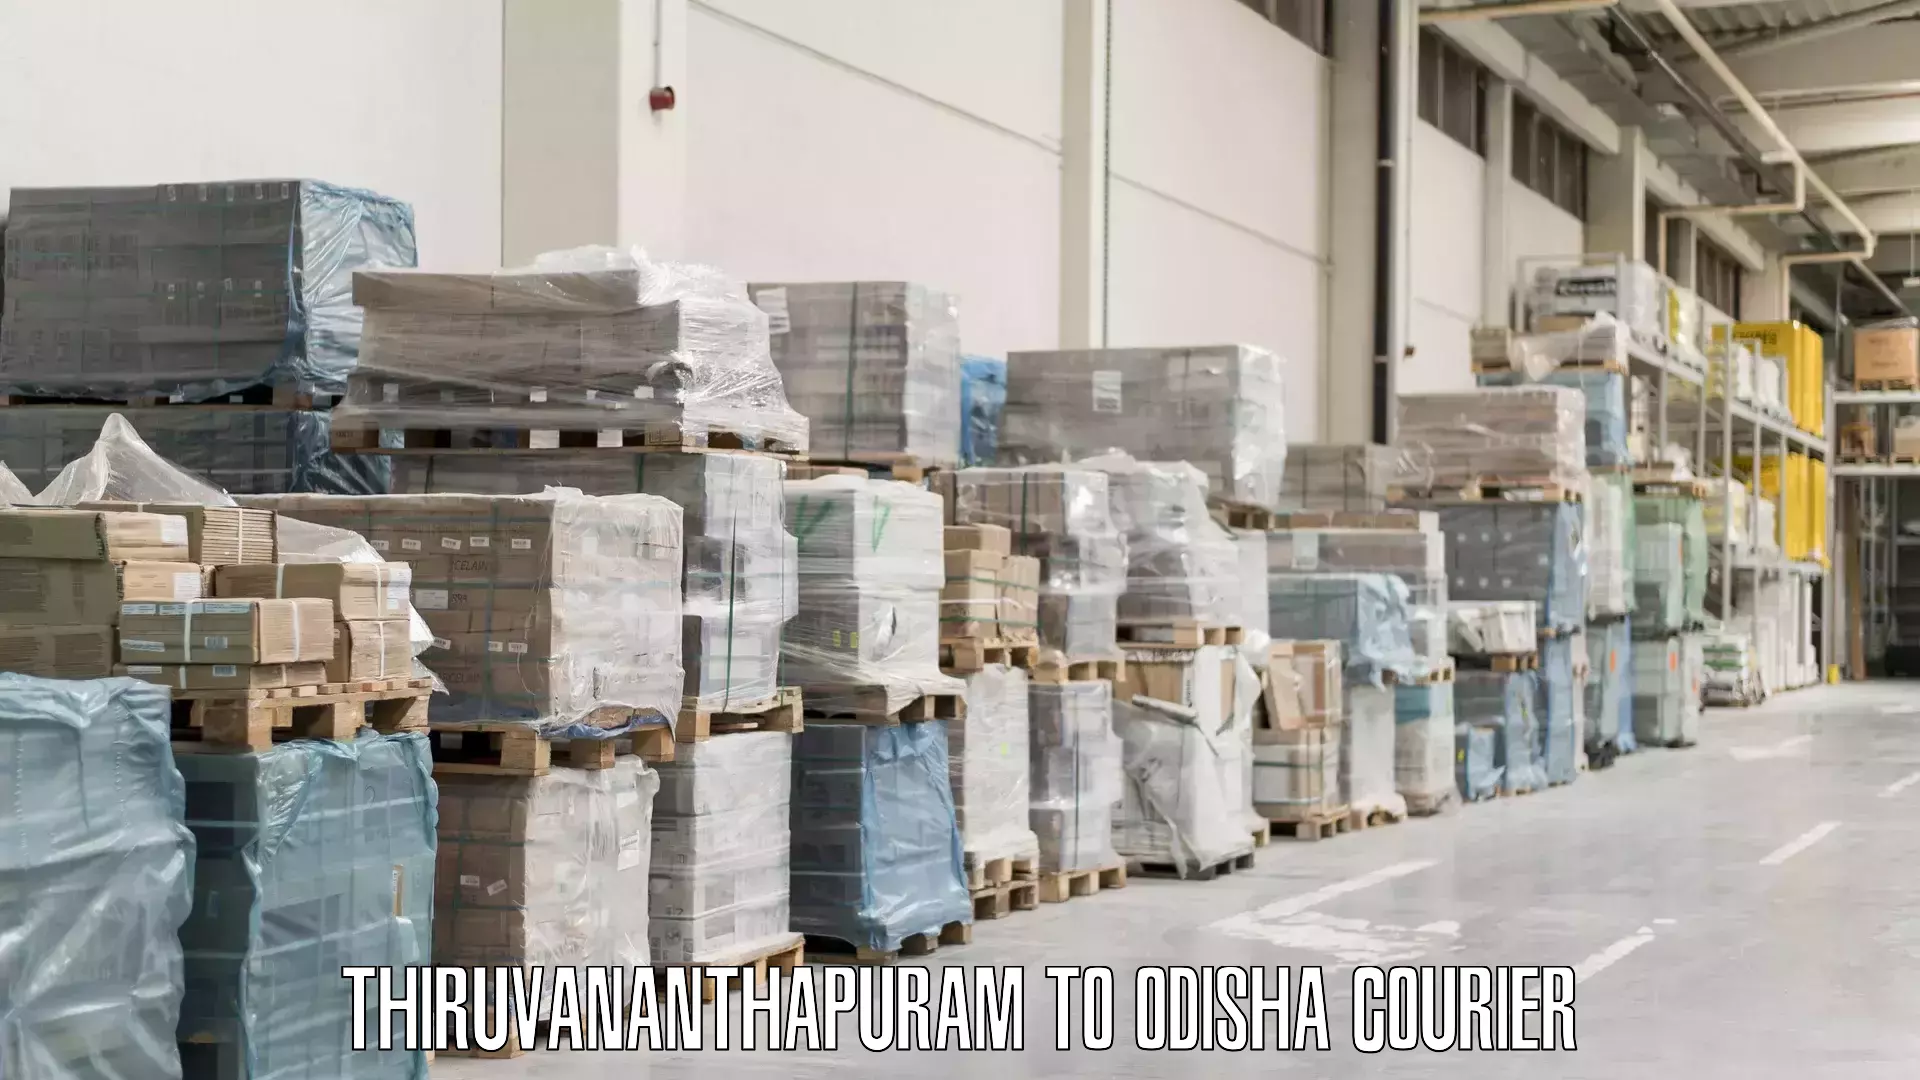 Baggage courier logistics Thiruvananthapuram to Odisha